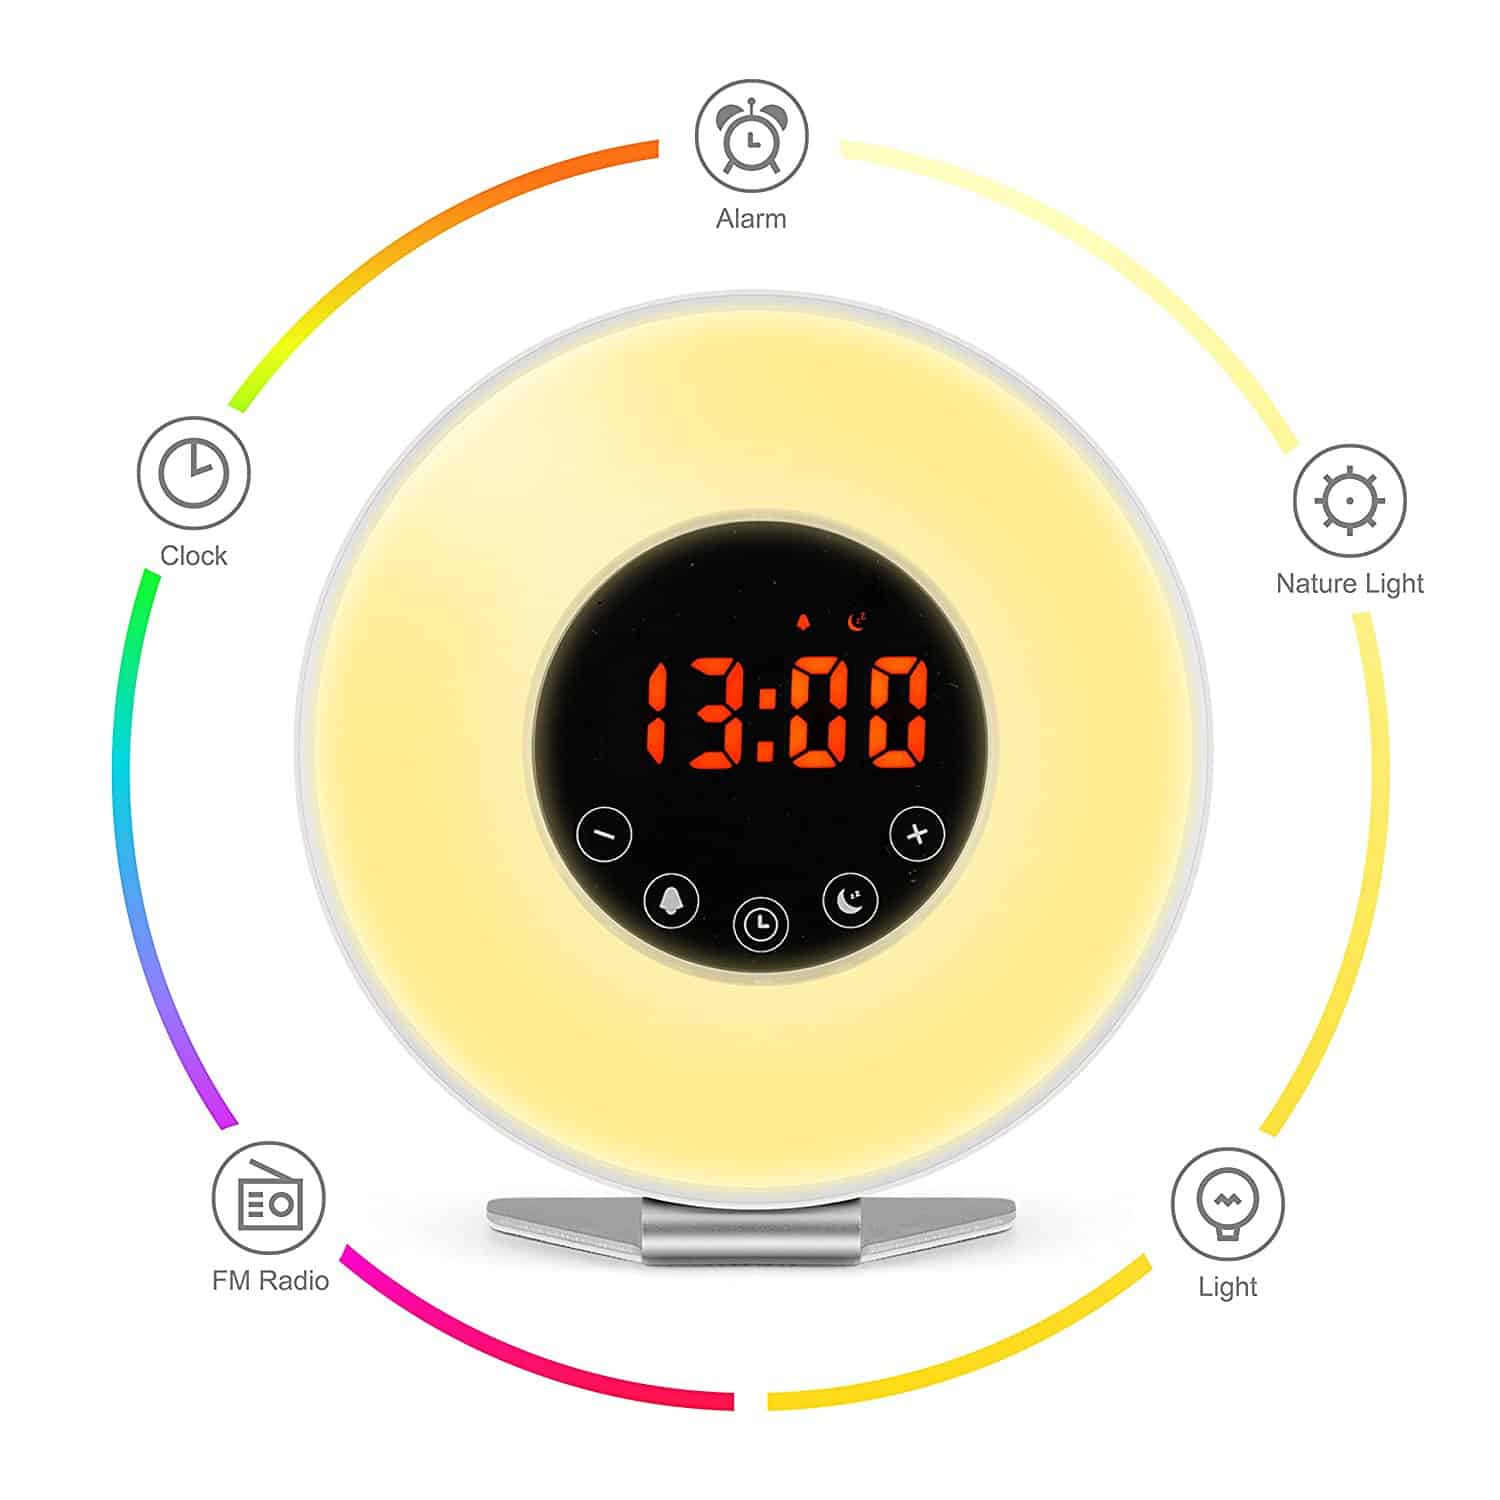 sunrise alarm clock